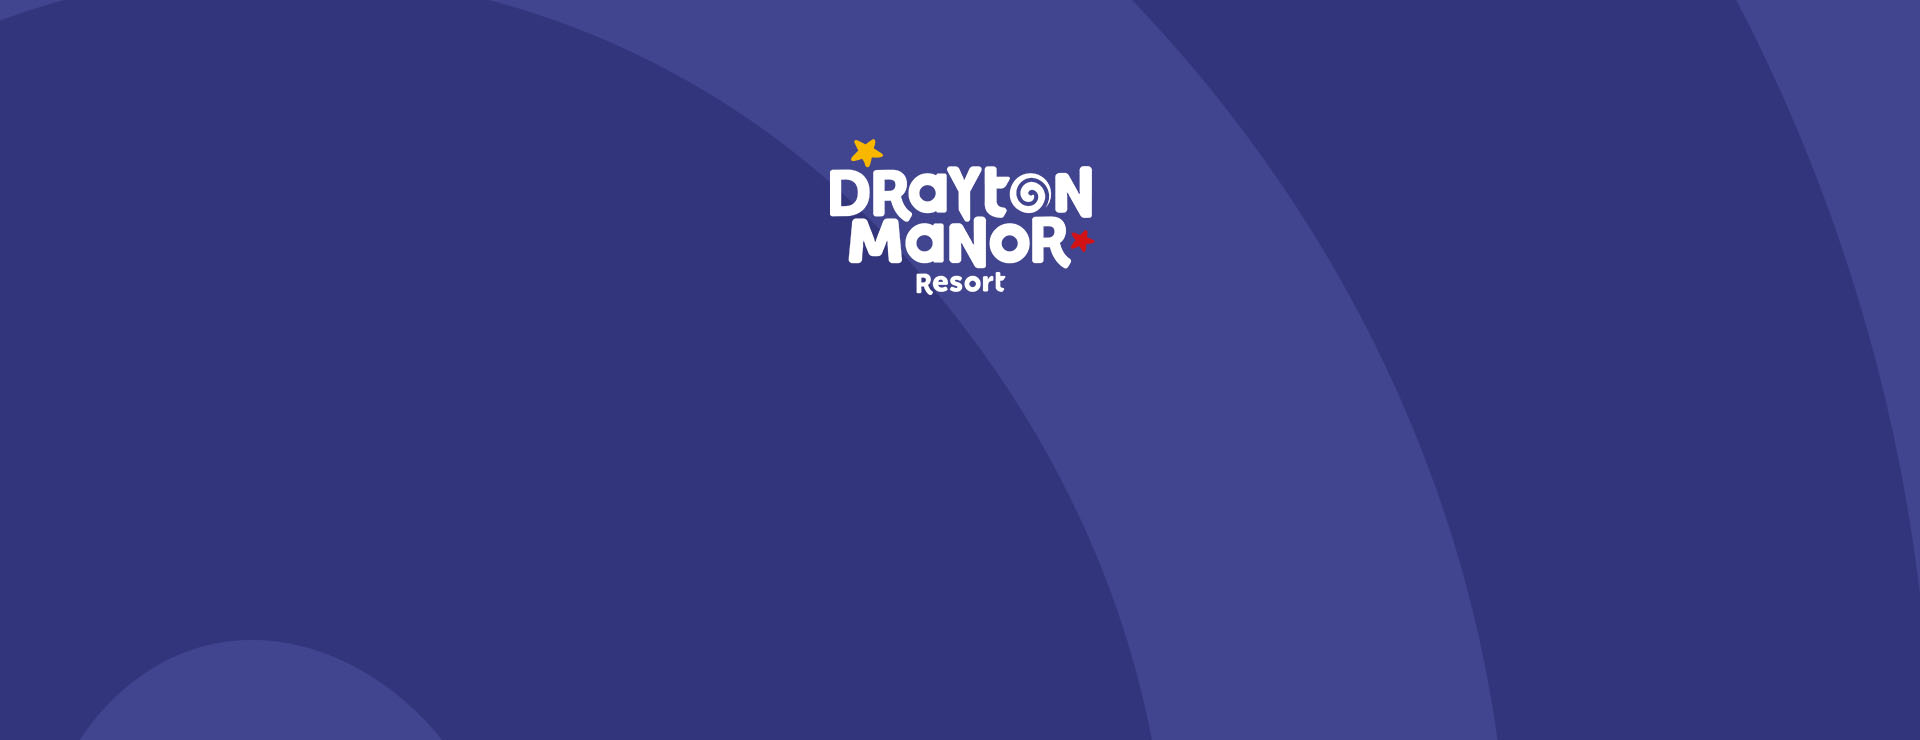 Drayton Manor Resort Logo